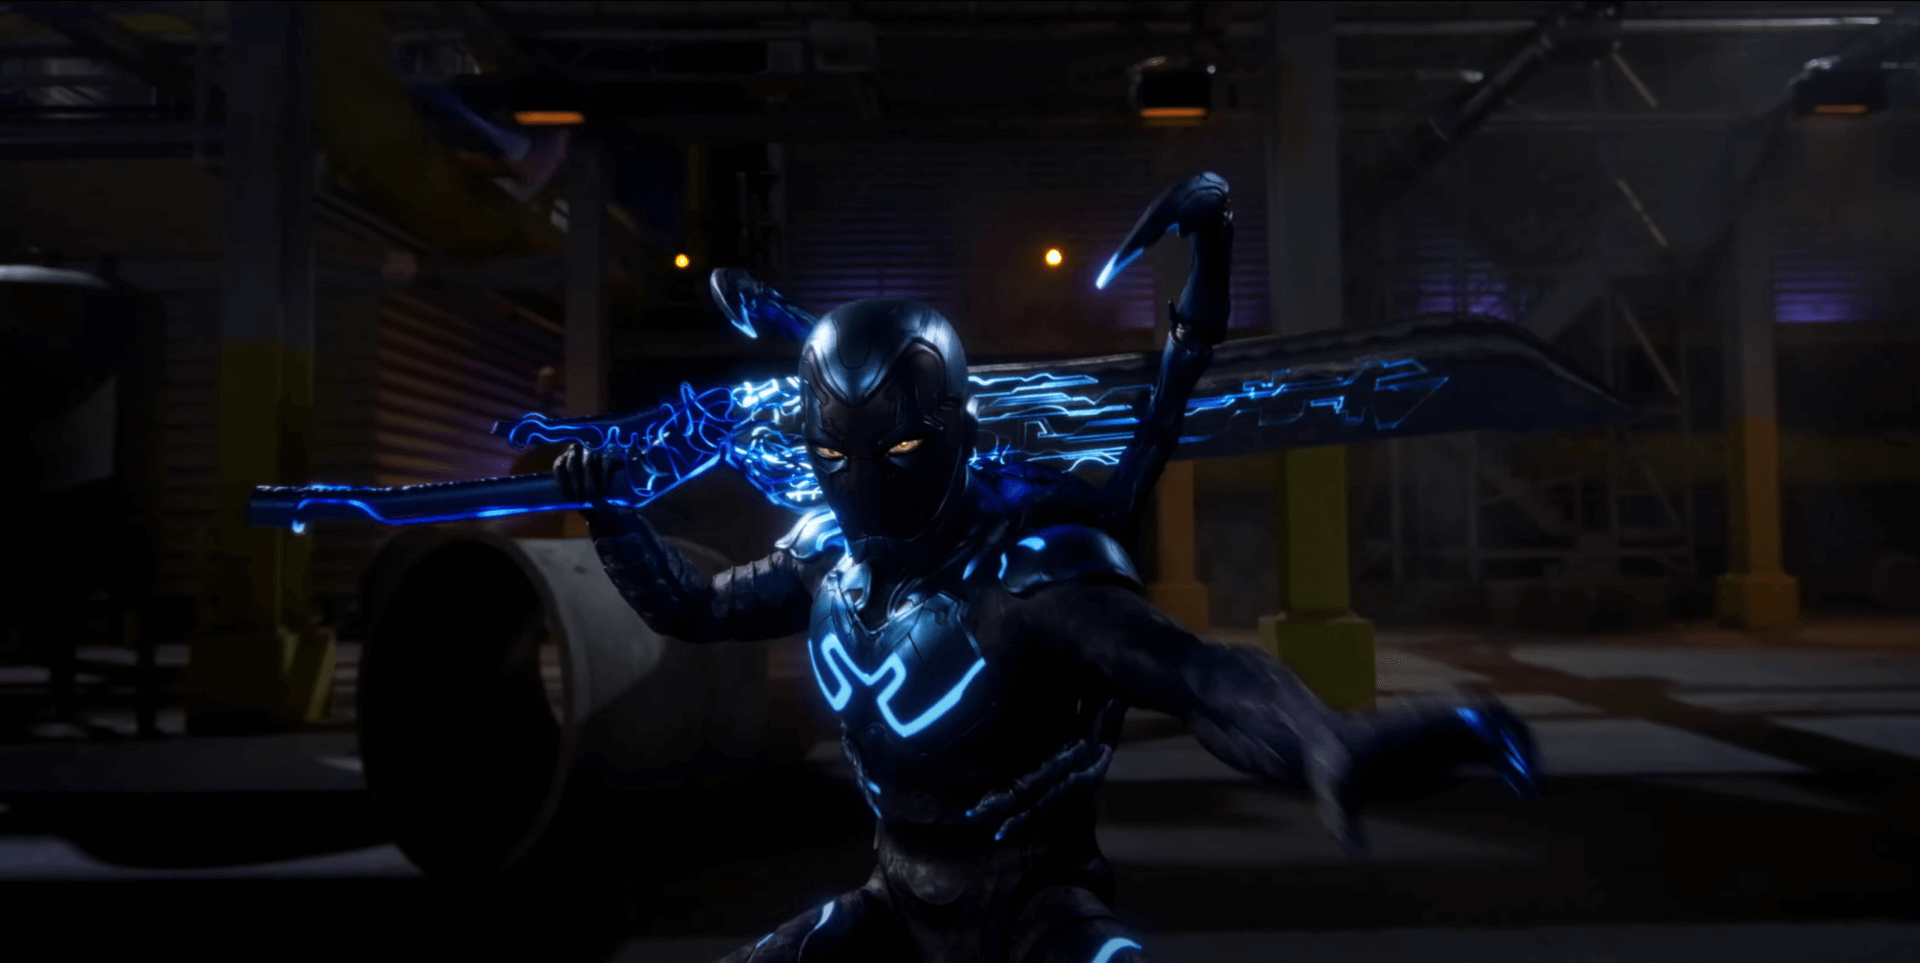 A Kék Bogár előzetesében a DC legújabb szuperhősét láthatjuk harc közben